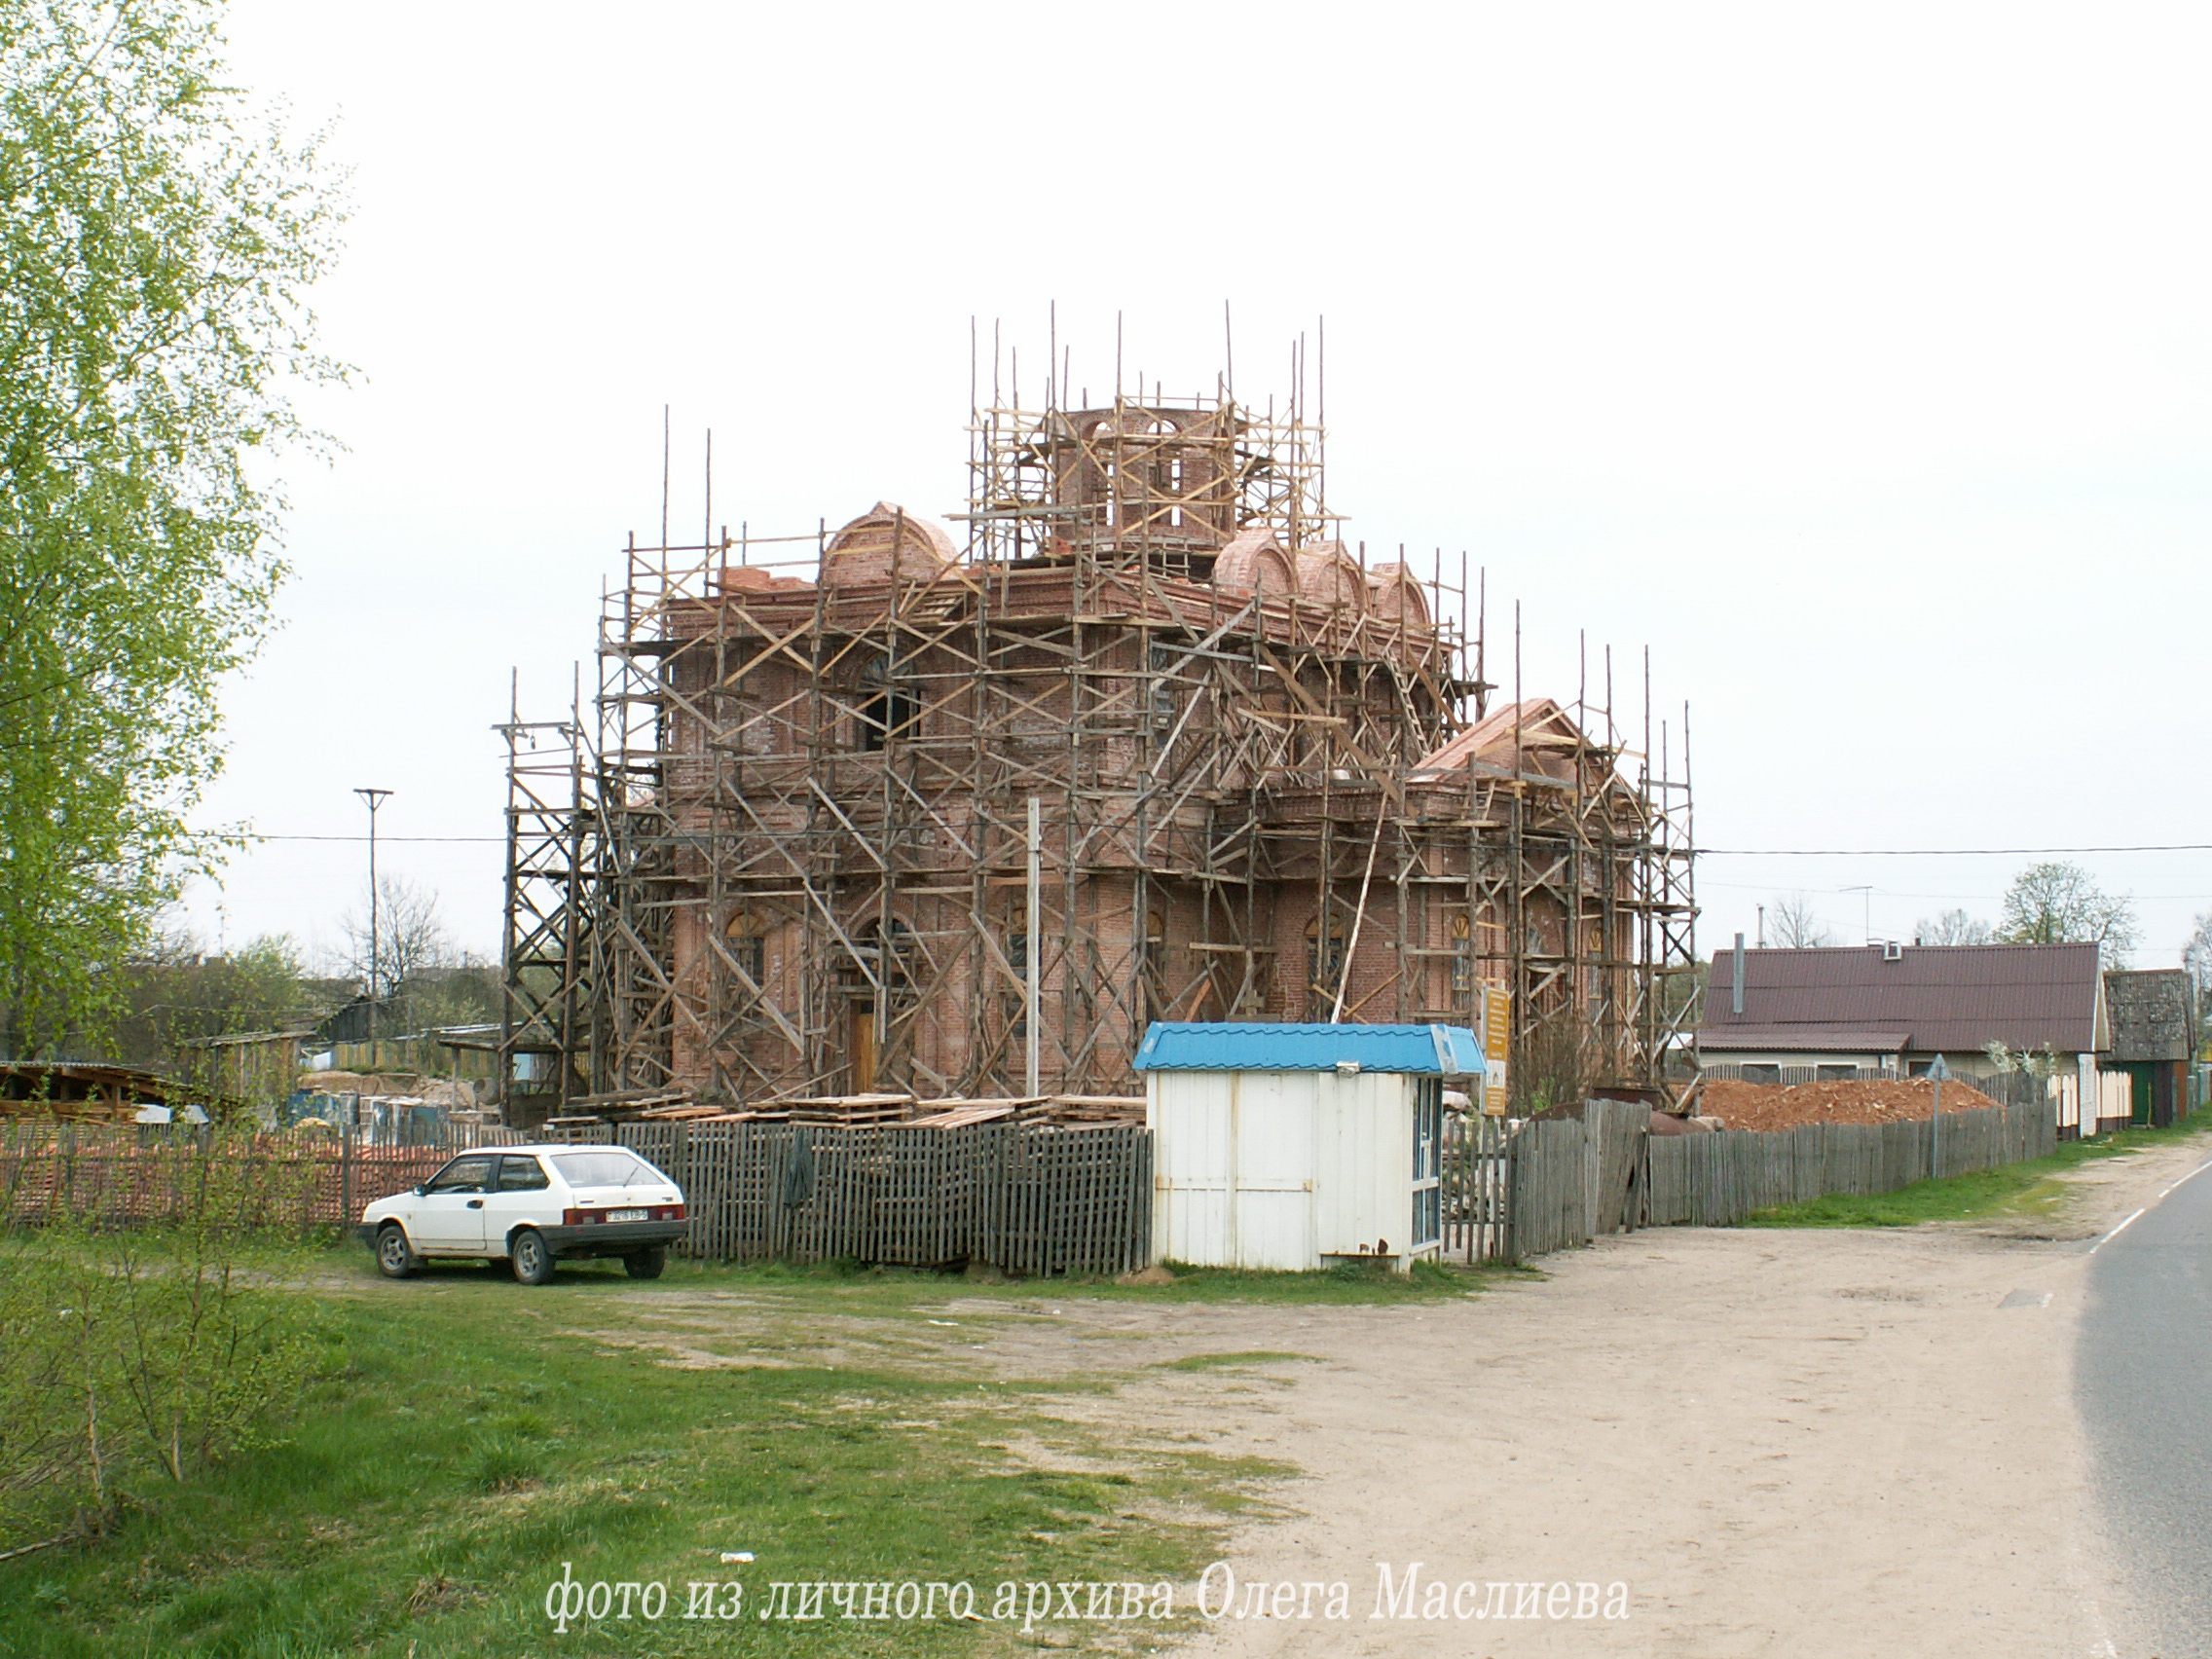 Храм. Май, 2010 г. Маслиев О.И.